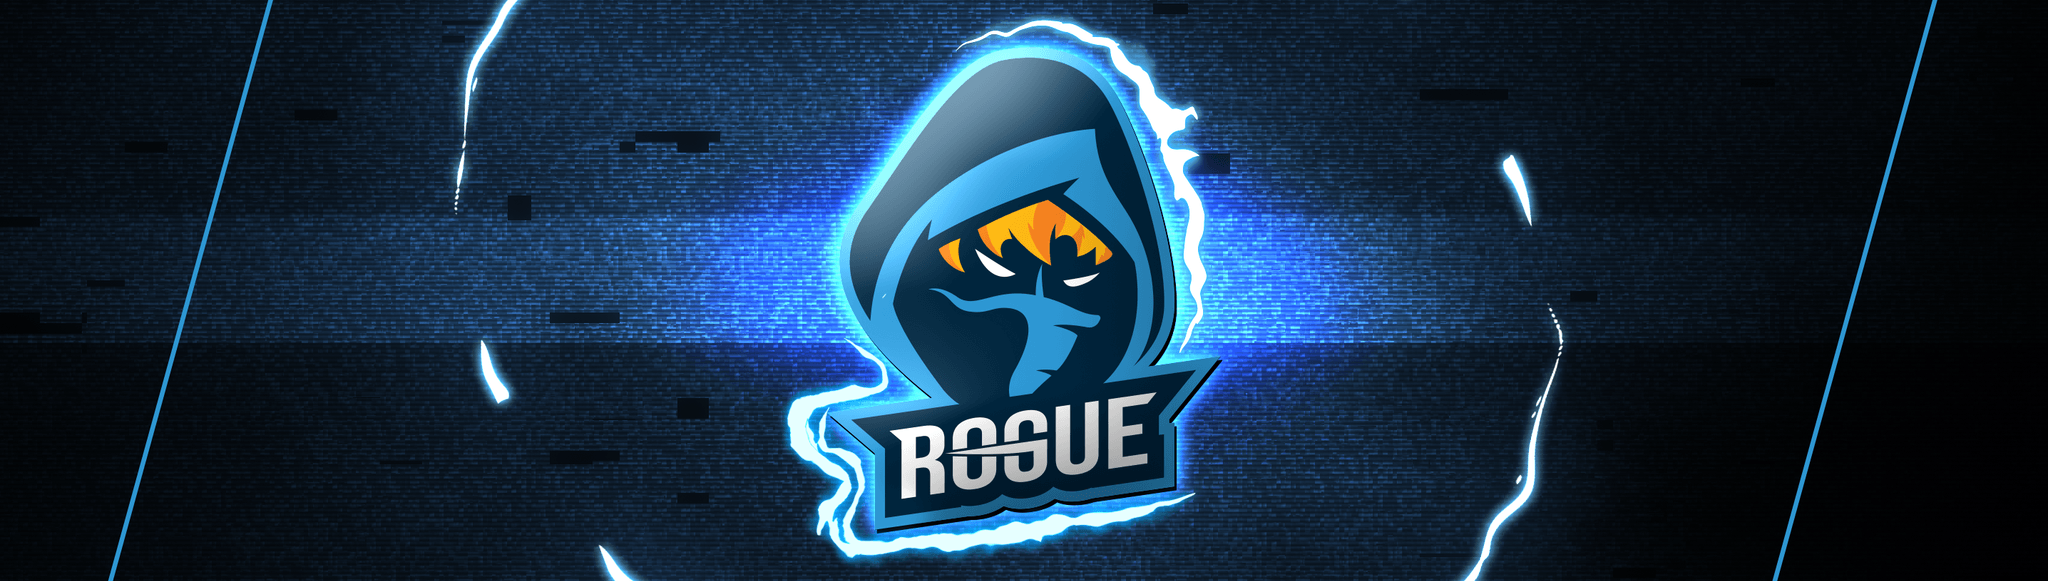 Rogue Logo - ROGUE